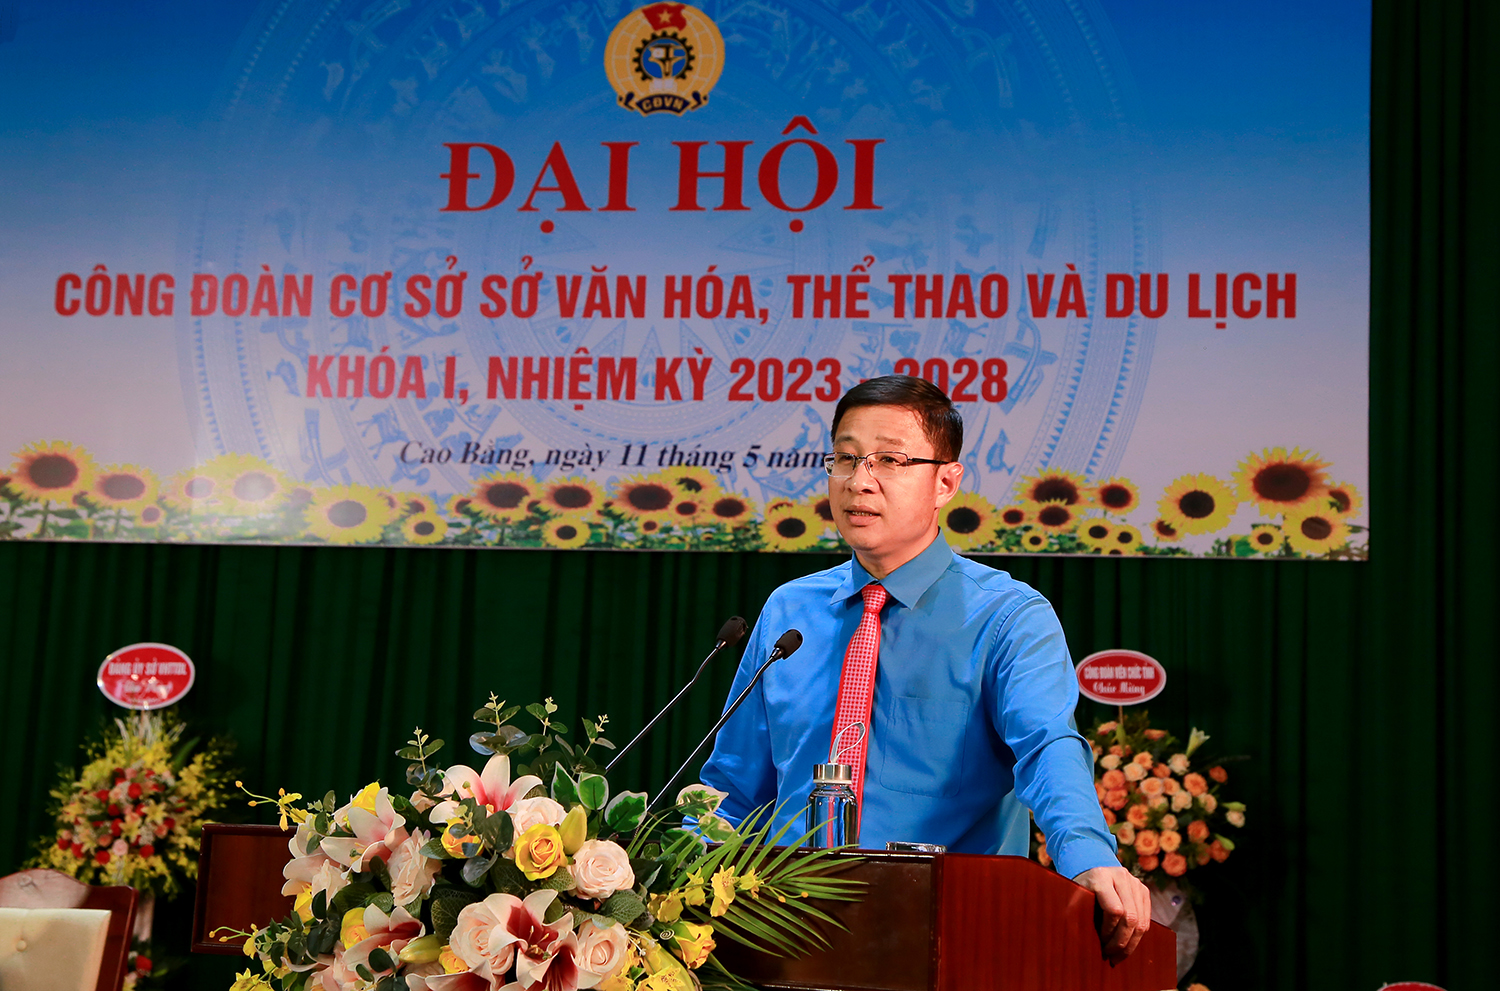 Đồng chí Ngọc Văn Phán, Chủ tịch Công đoàn viên chức tỉnh phát biểu chỉ đạo Đại hội.